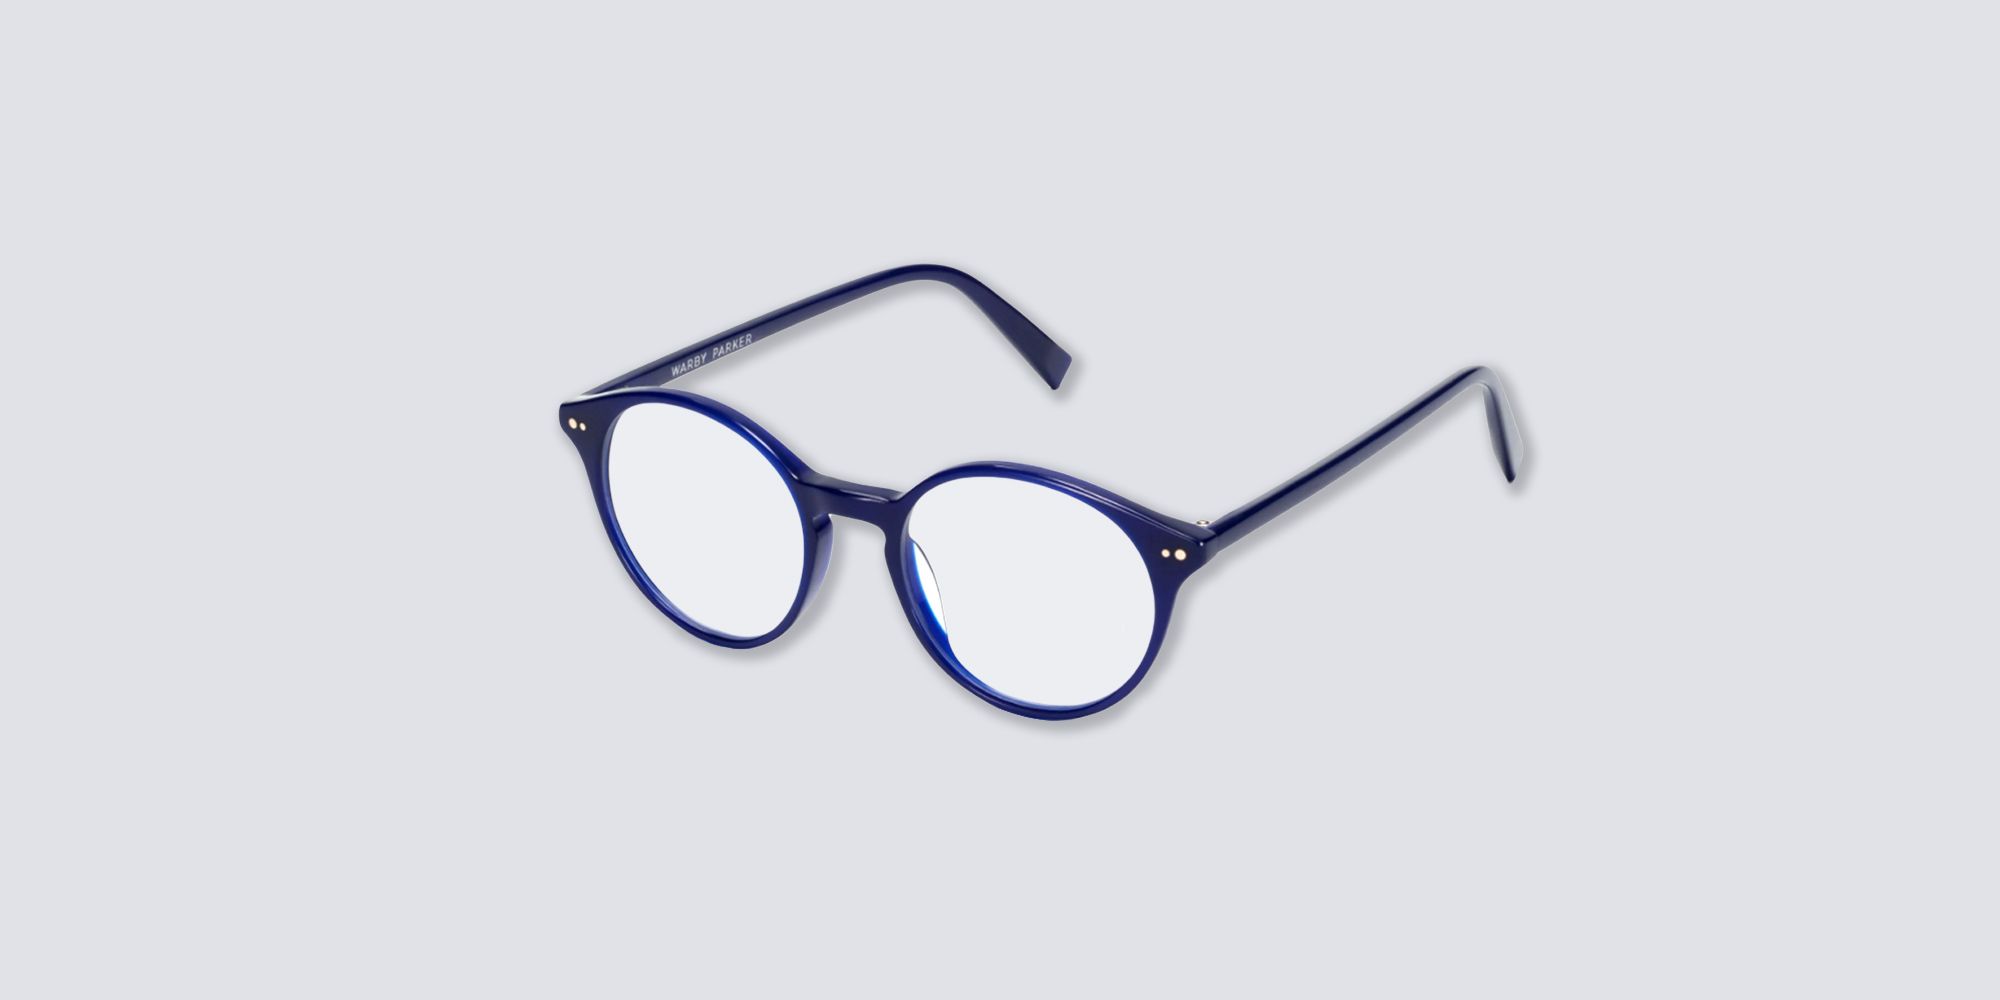 buy eyeglasses online india